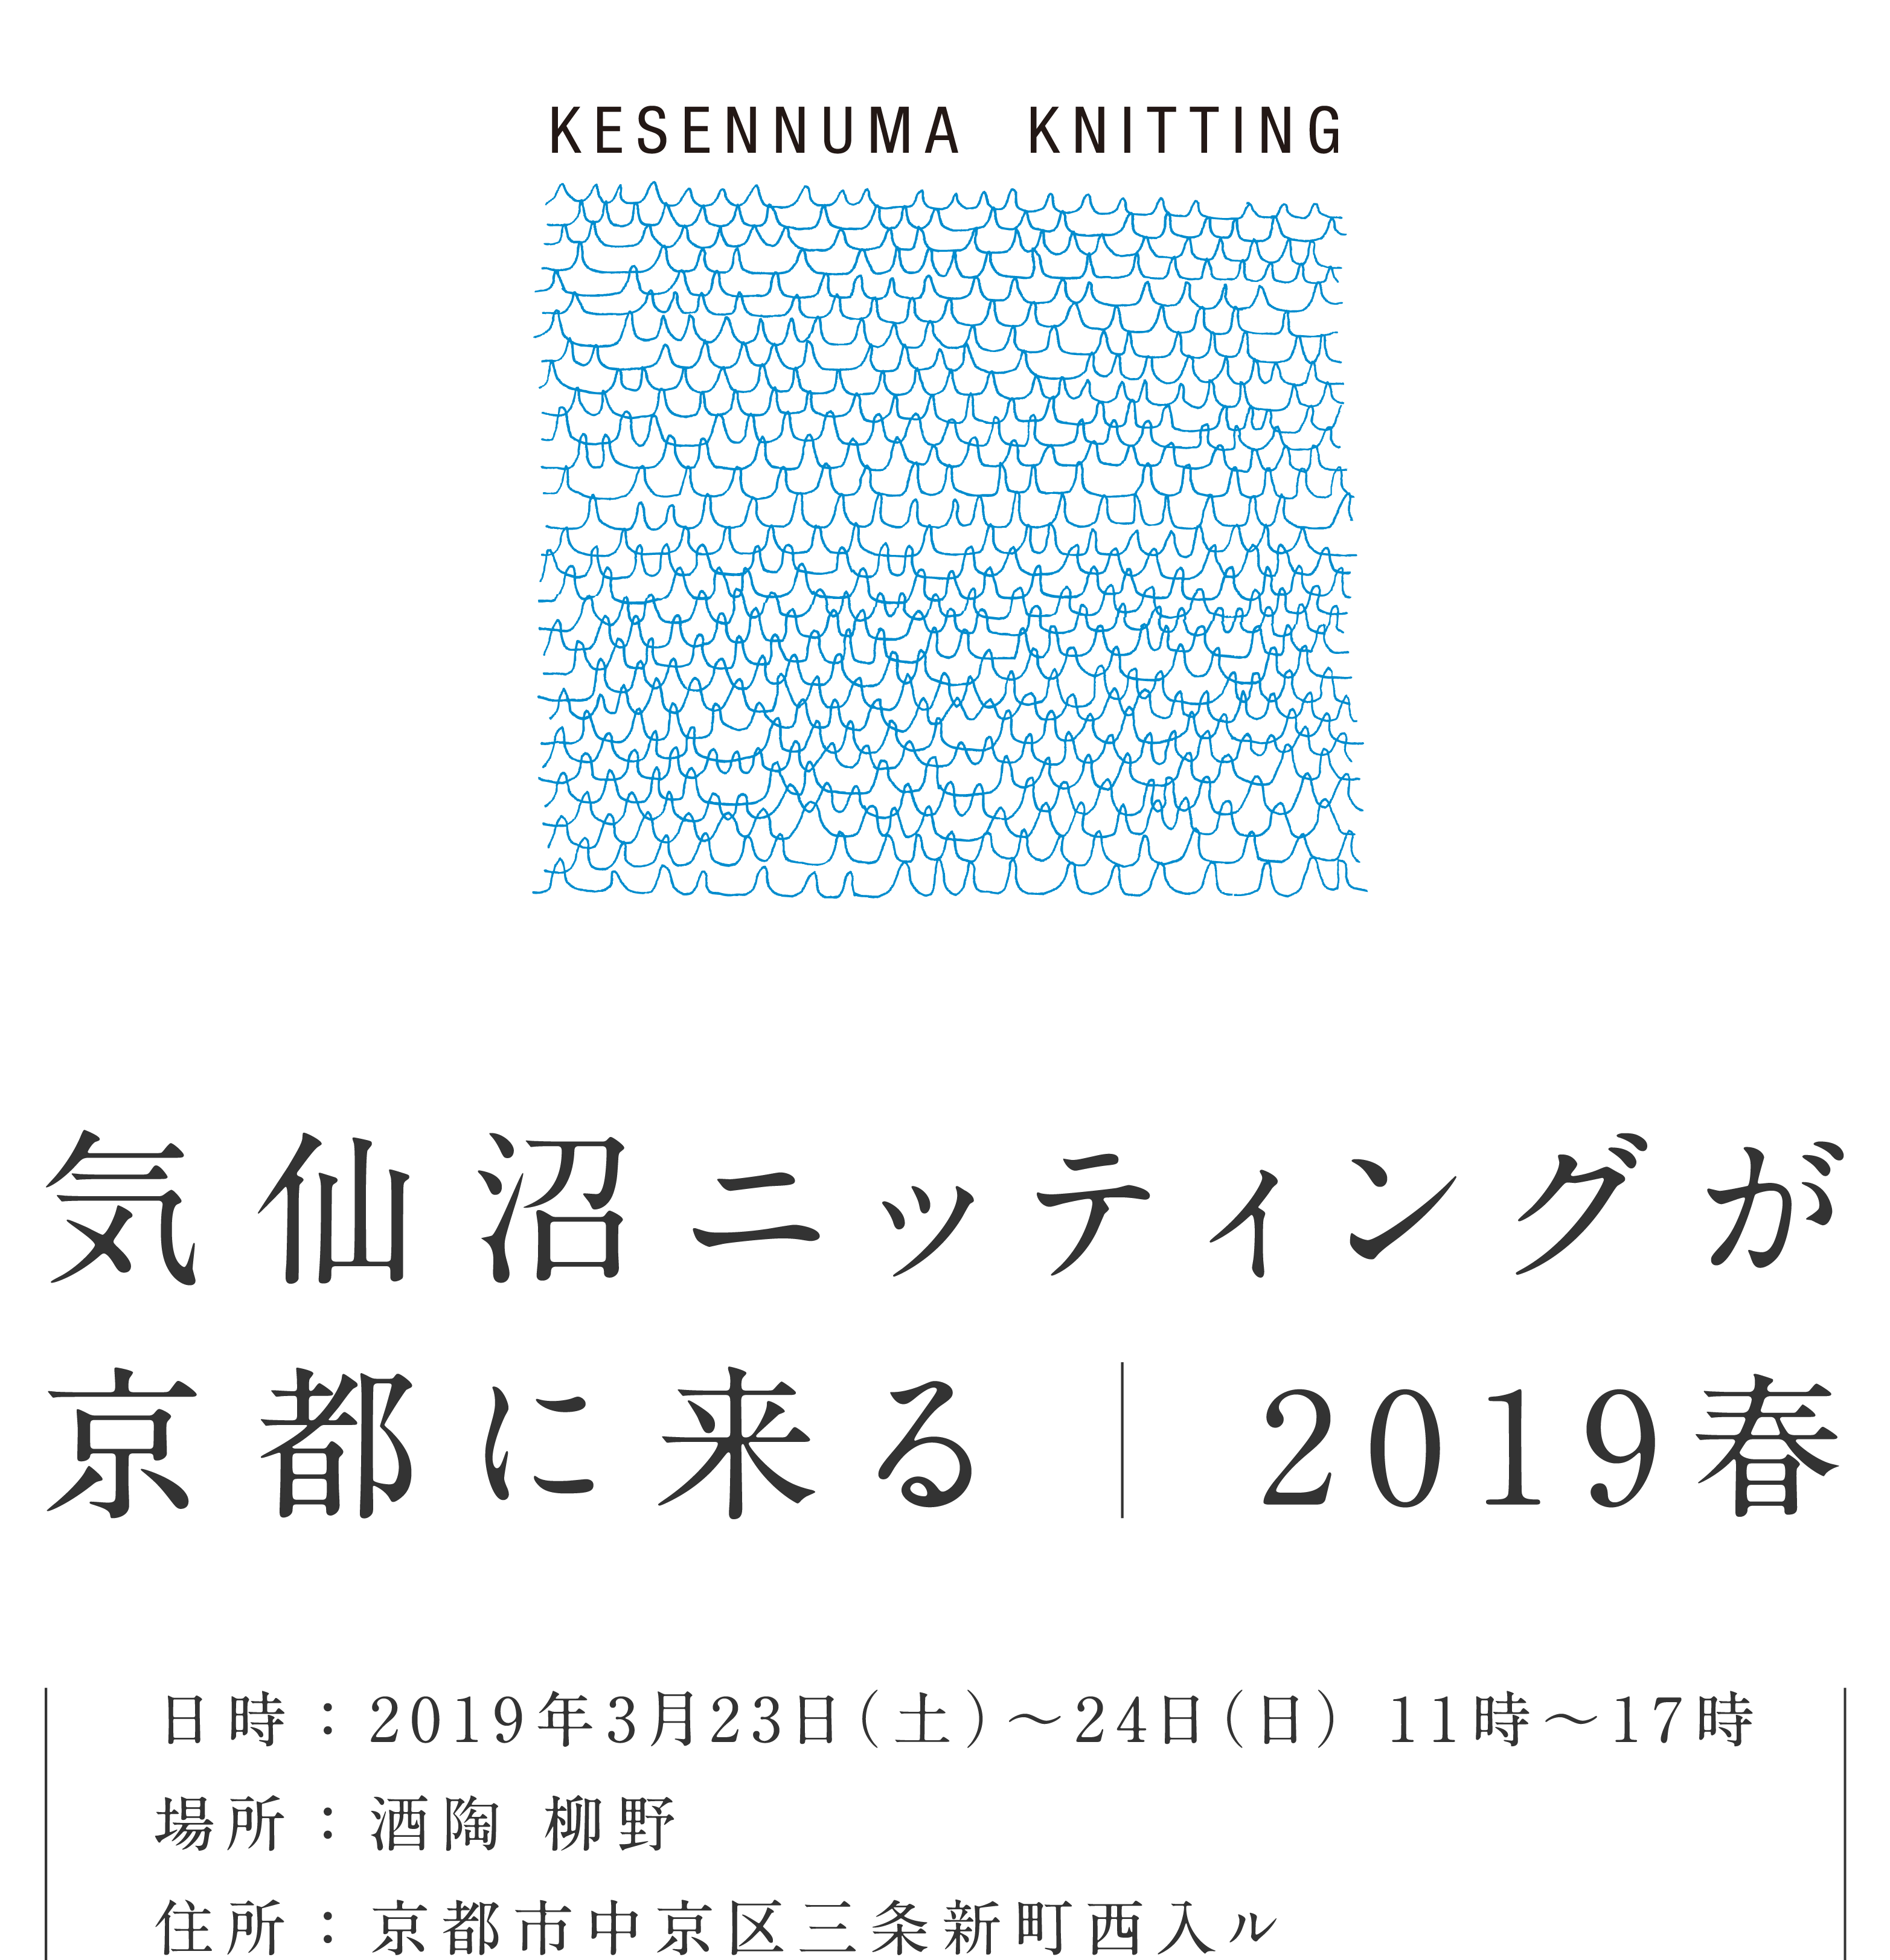 気仙沼ニッティングが京都に来る 2019春